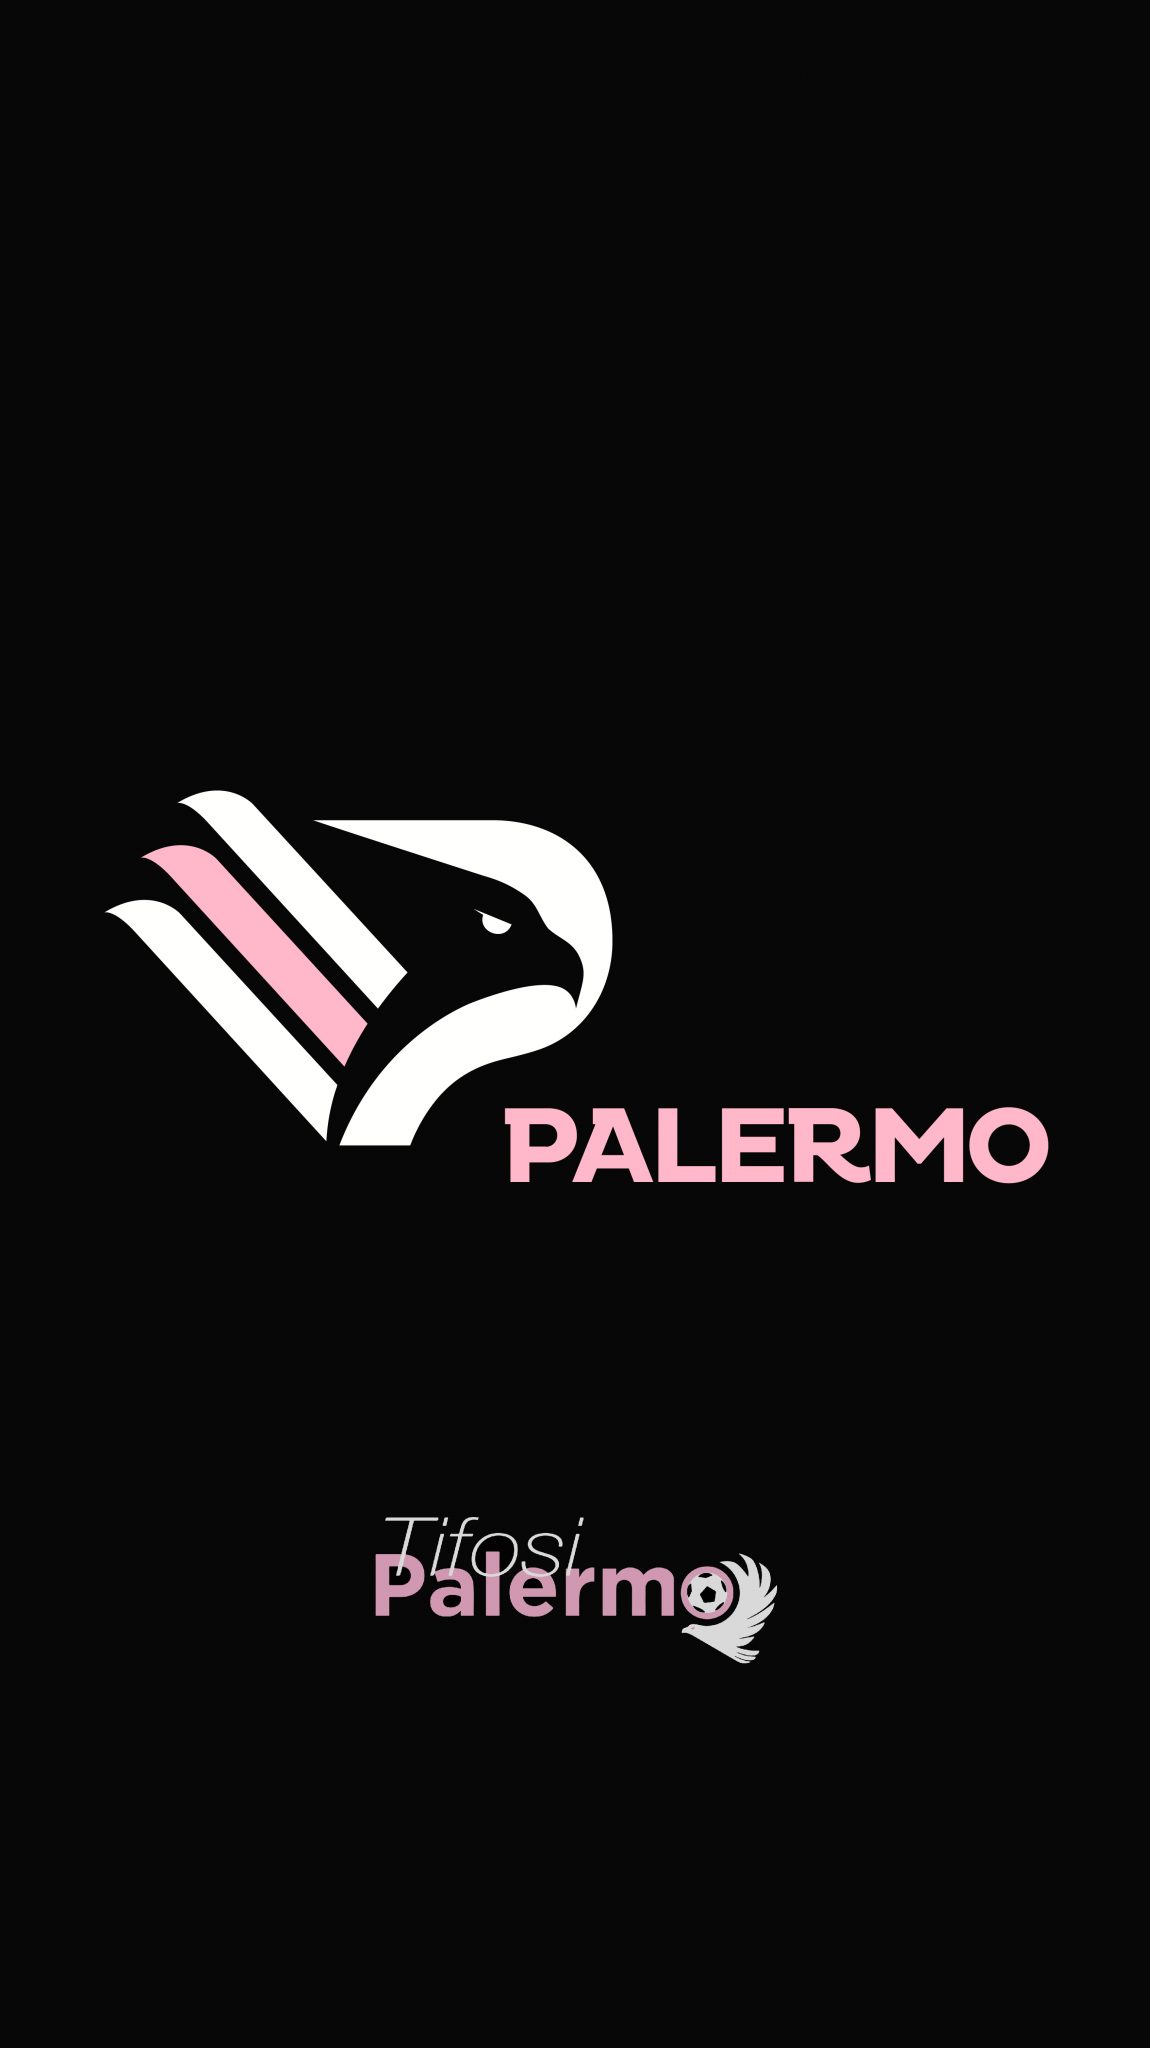 TifosiPalermo vi regala i nuovi sfondi per smartphone del Palermo Calcio!  Scaricali subito! - TifosiPalermo